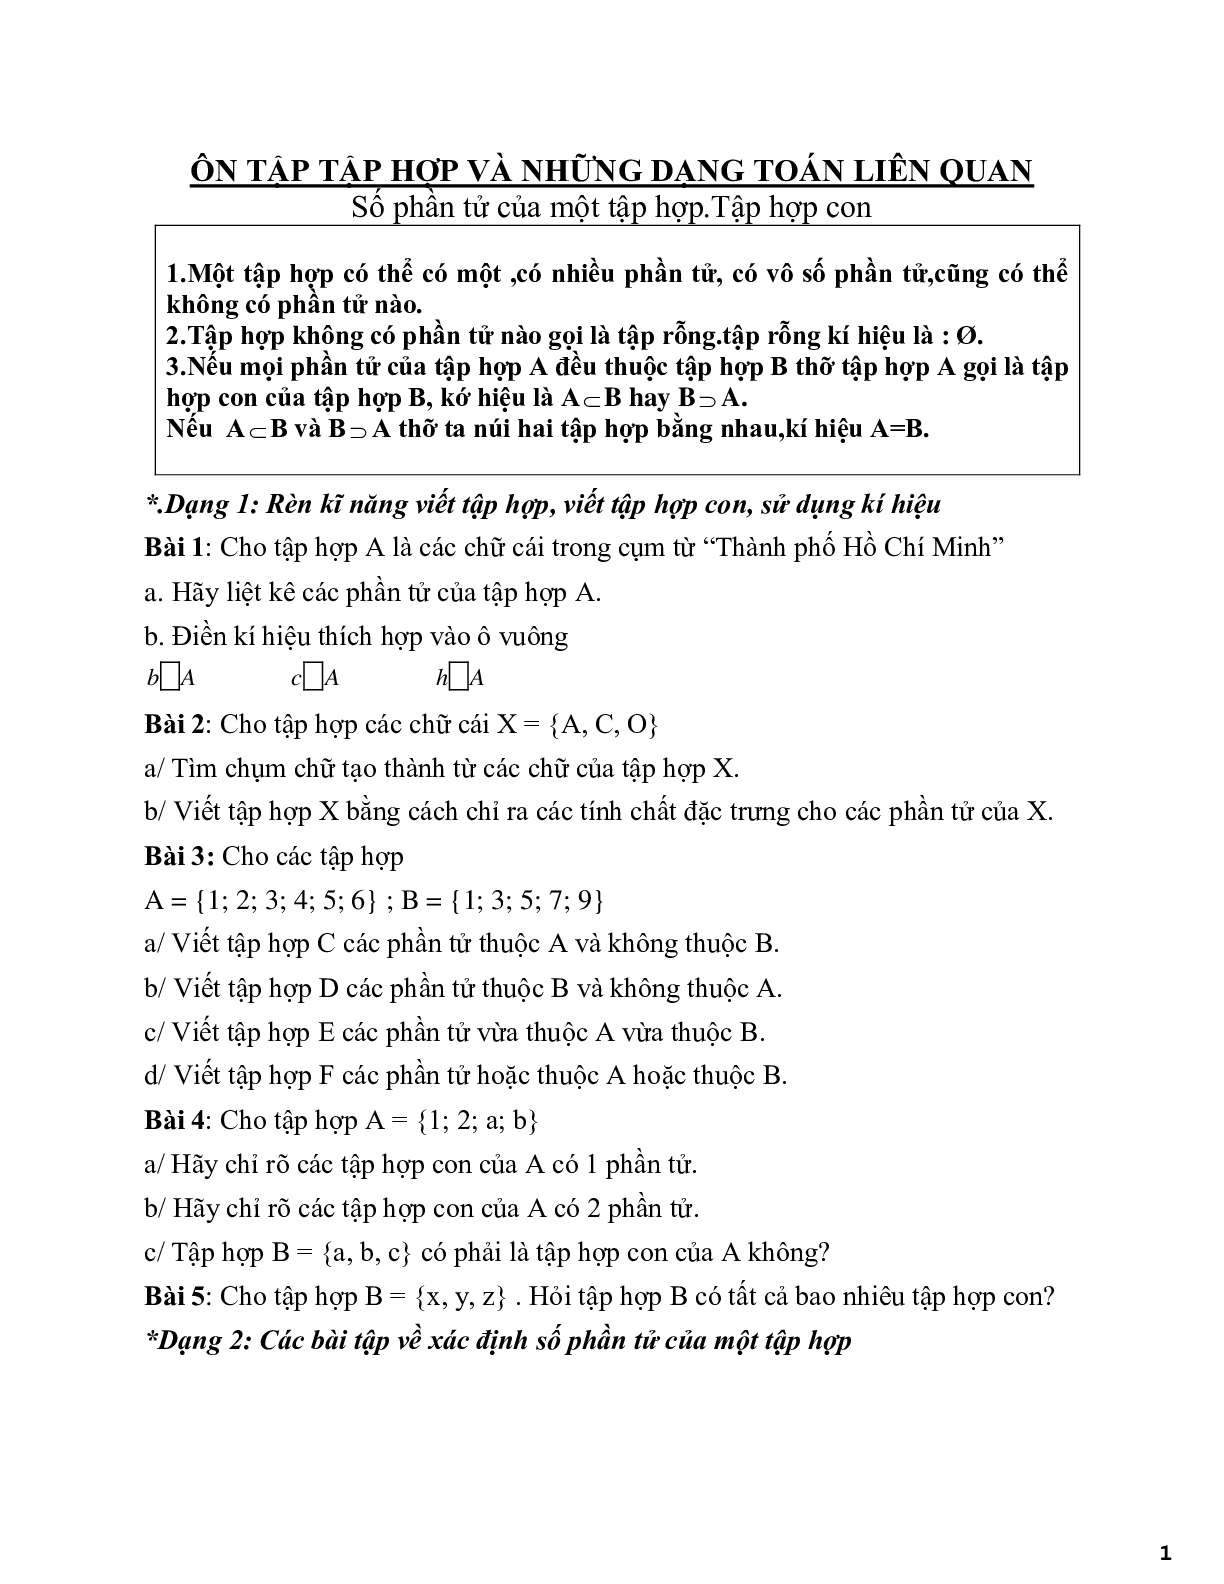 Ôn tập về Tập hợp và những dạng toán liên quan (trang 1)